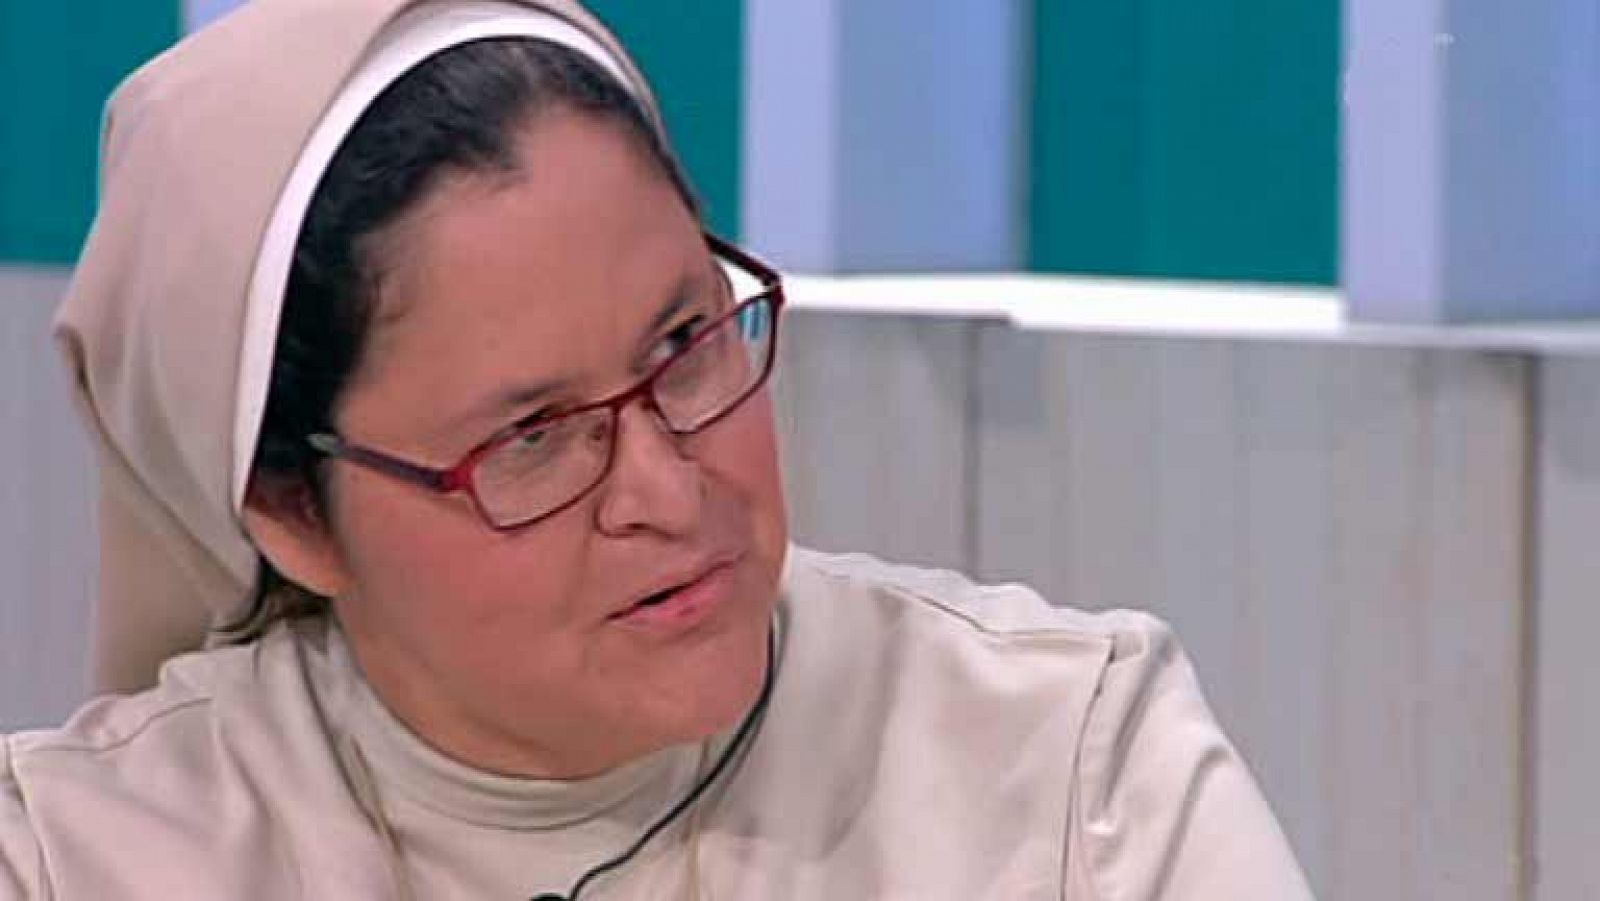 La mañana - Xiskya, la monja tuitera, en 'Amigas y conocidas': 'Hay que ver ya a una religiosa como una ciudadana más'